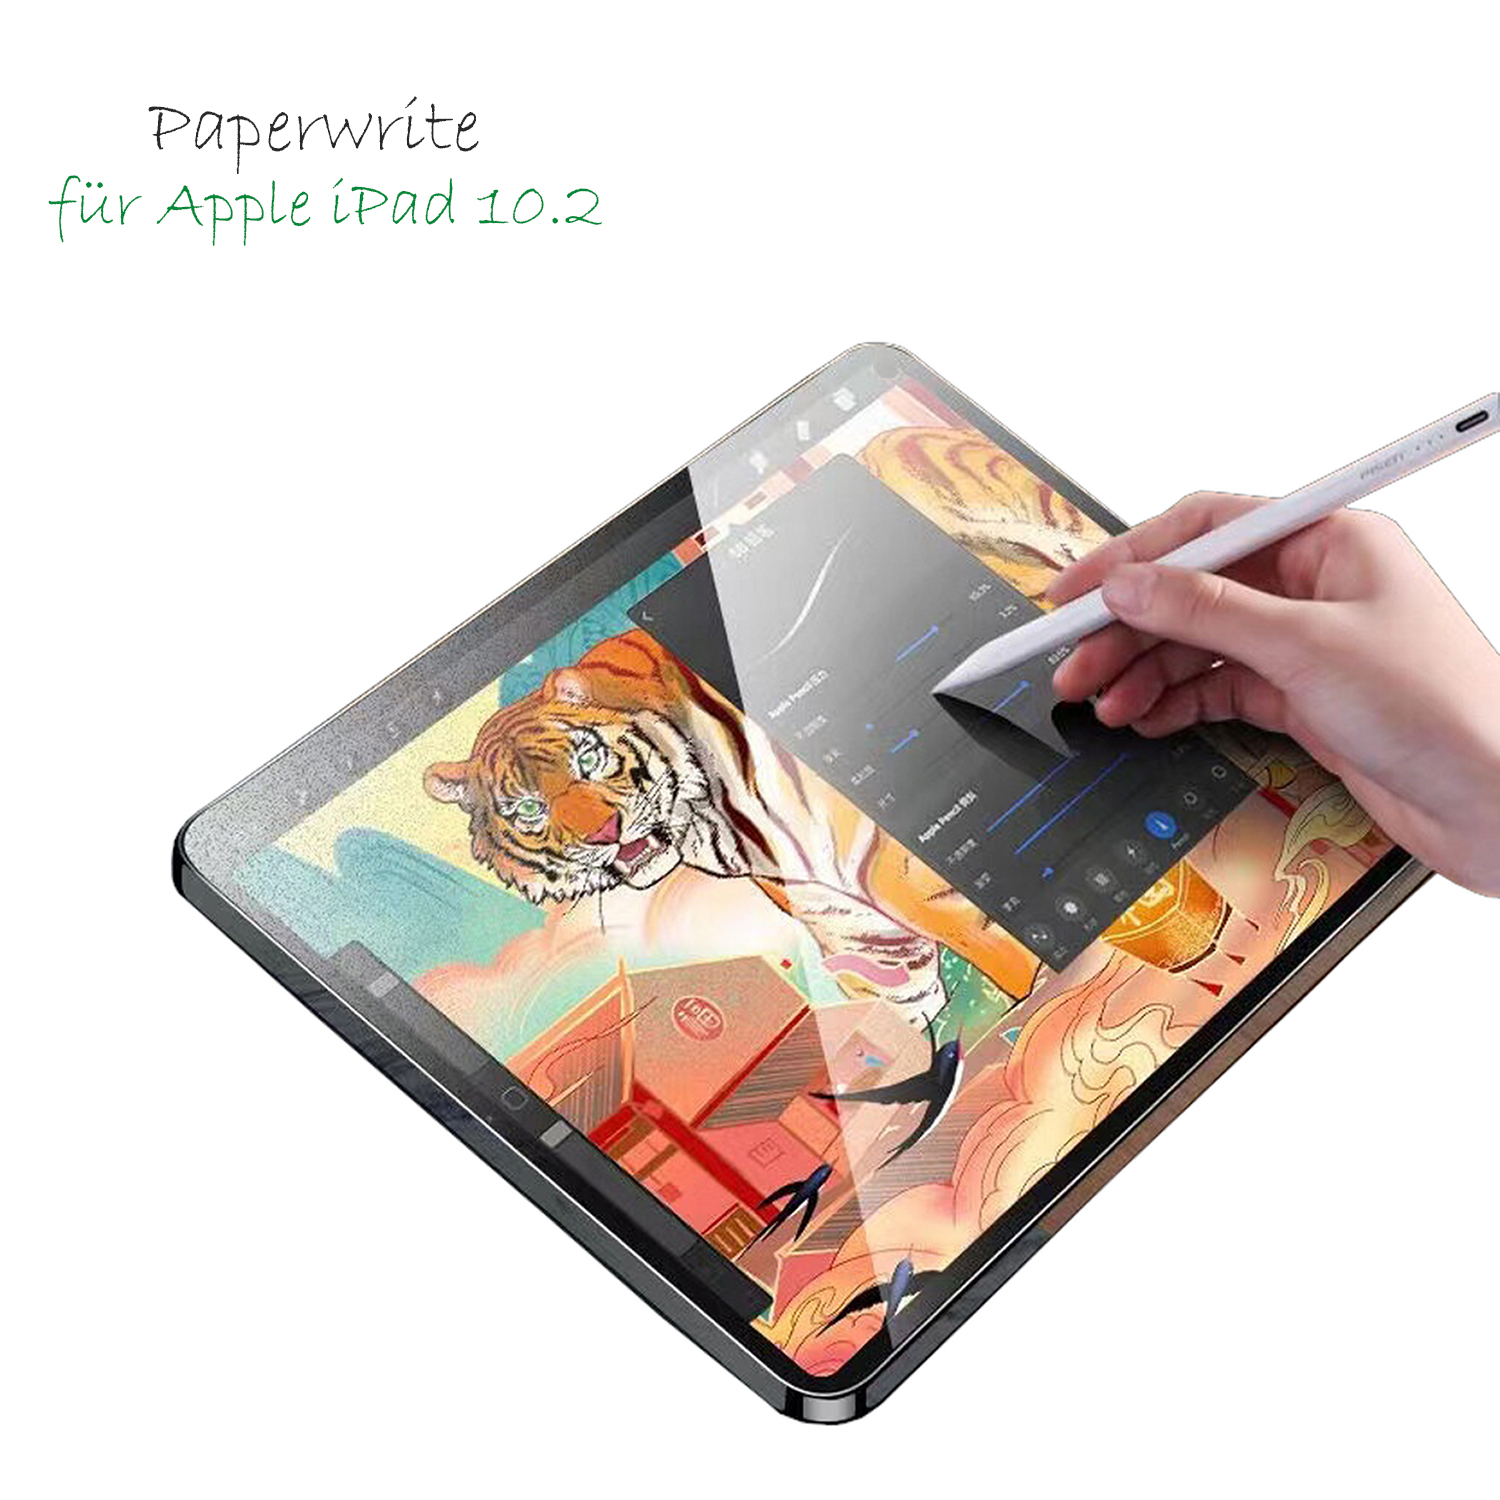 Die Paperwrite matter Schreibfolie für iPad und Displayschutzfolie ist die perfekte Lösung, um Ihr iPad vor Kratzern zu schützen.